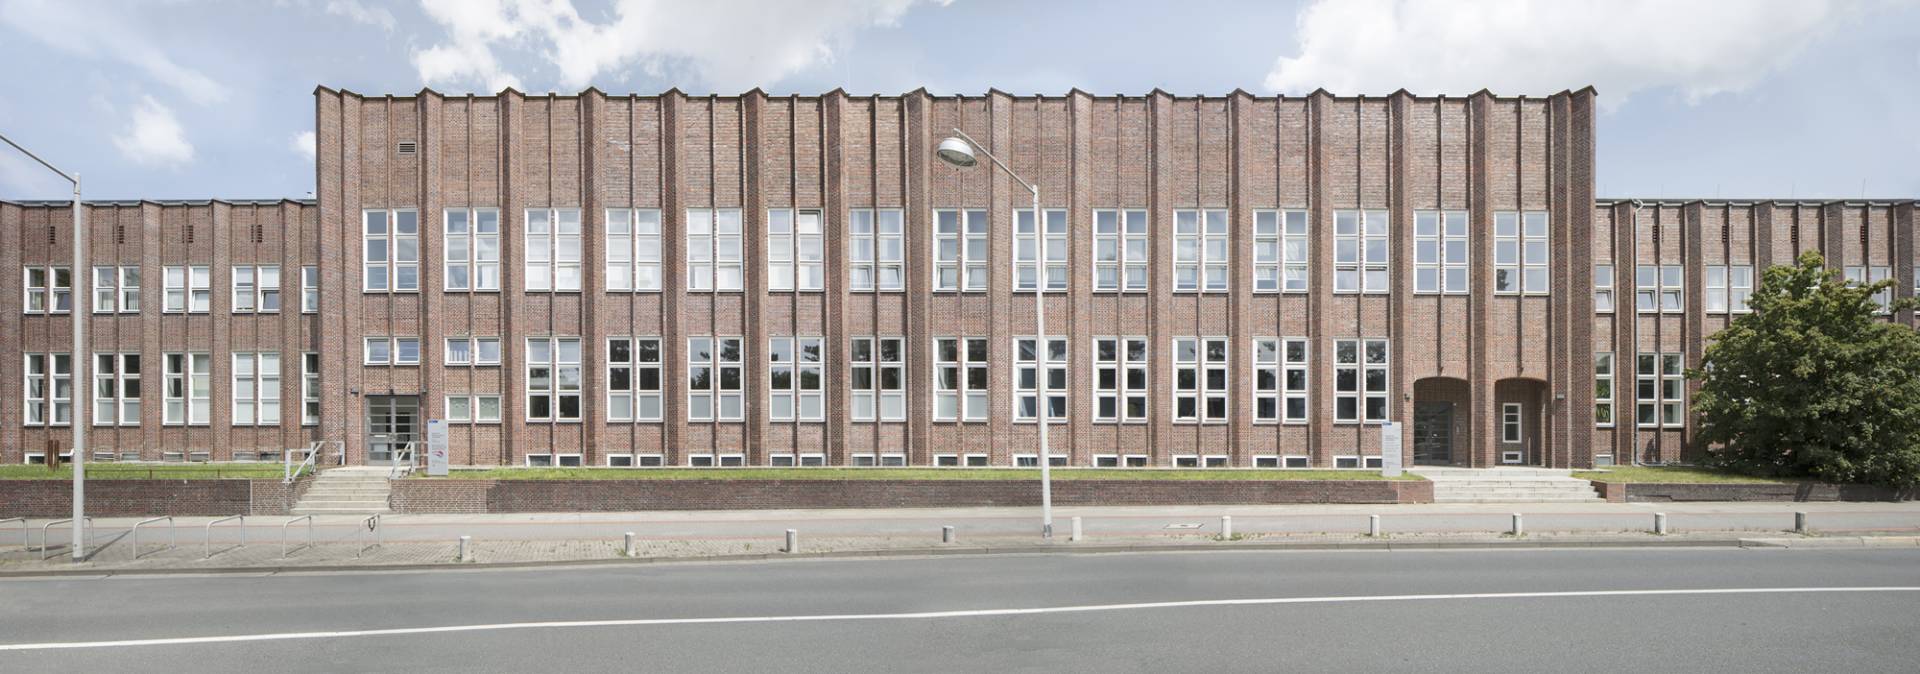 Fassadensanierung Nienburger Straße Titelbild